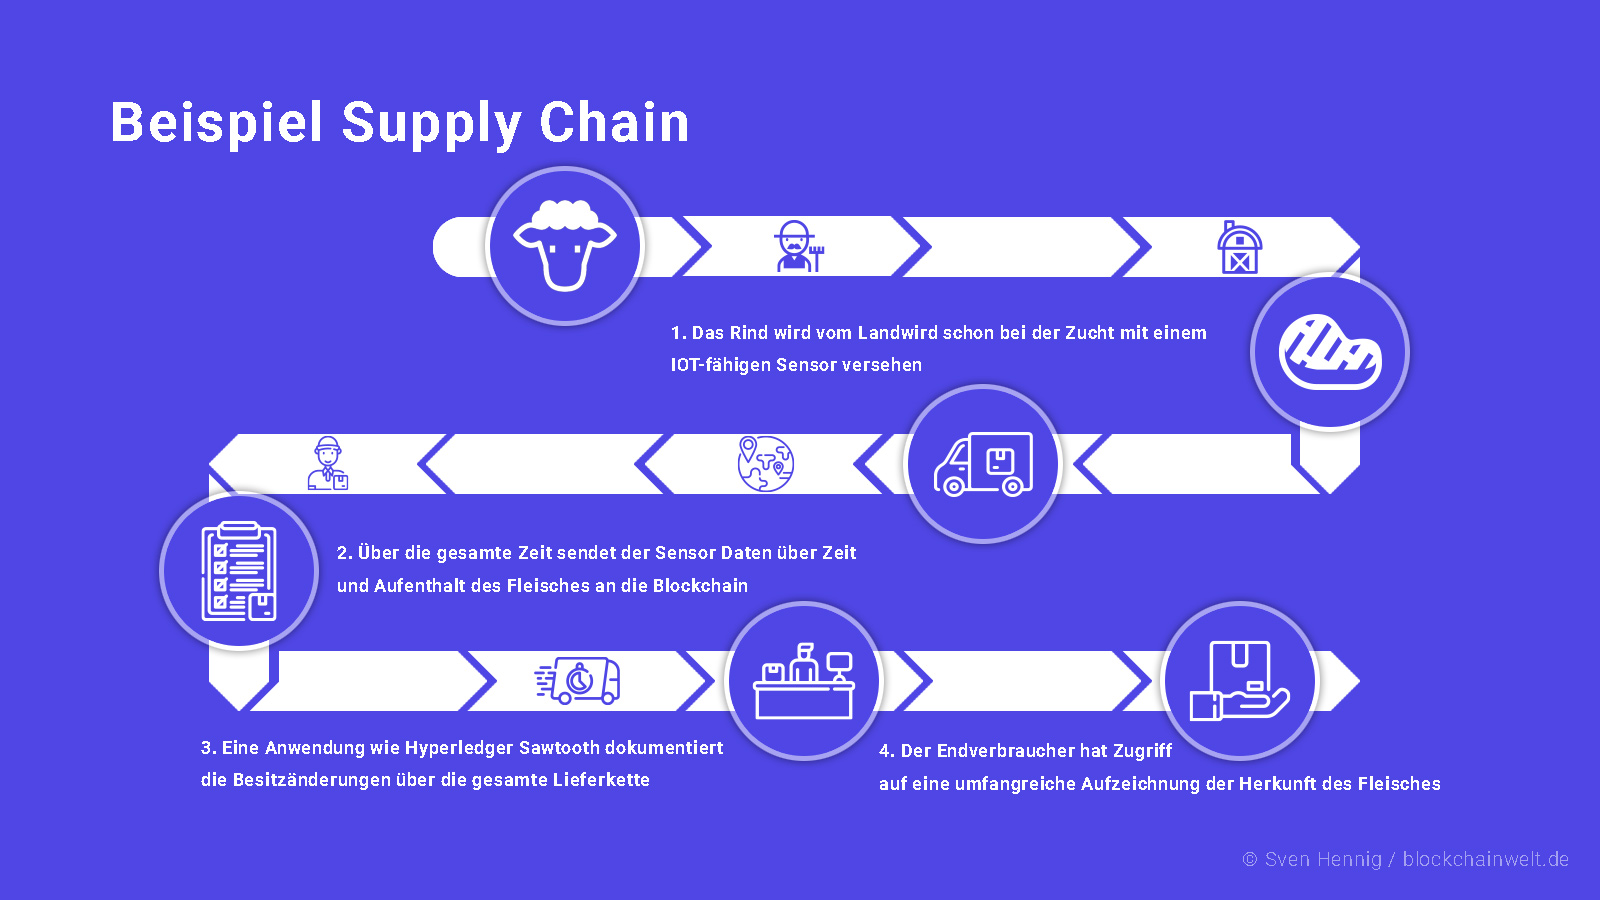 Beispiel einer Supply Chain auf Blockchain-Basis